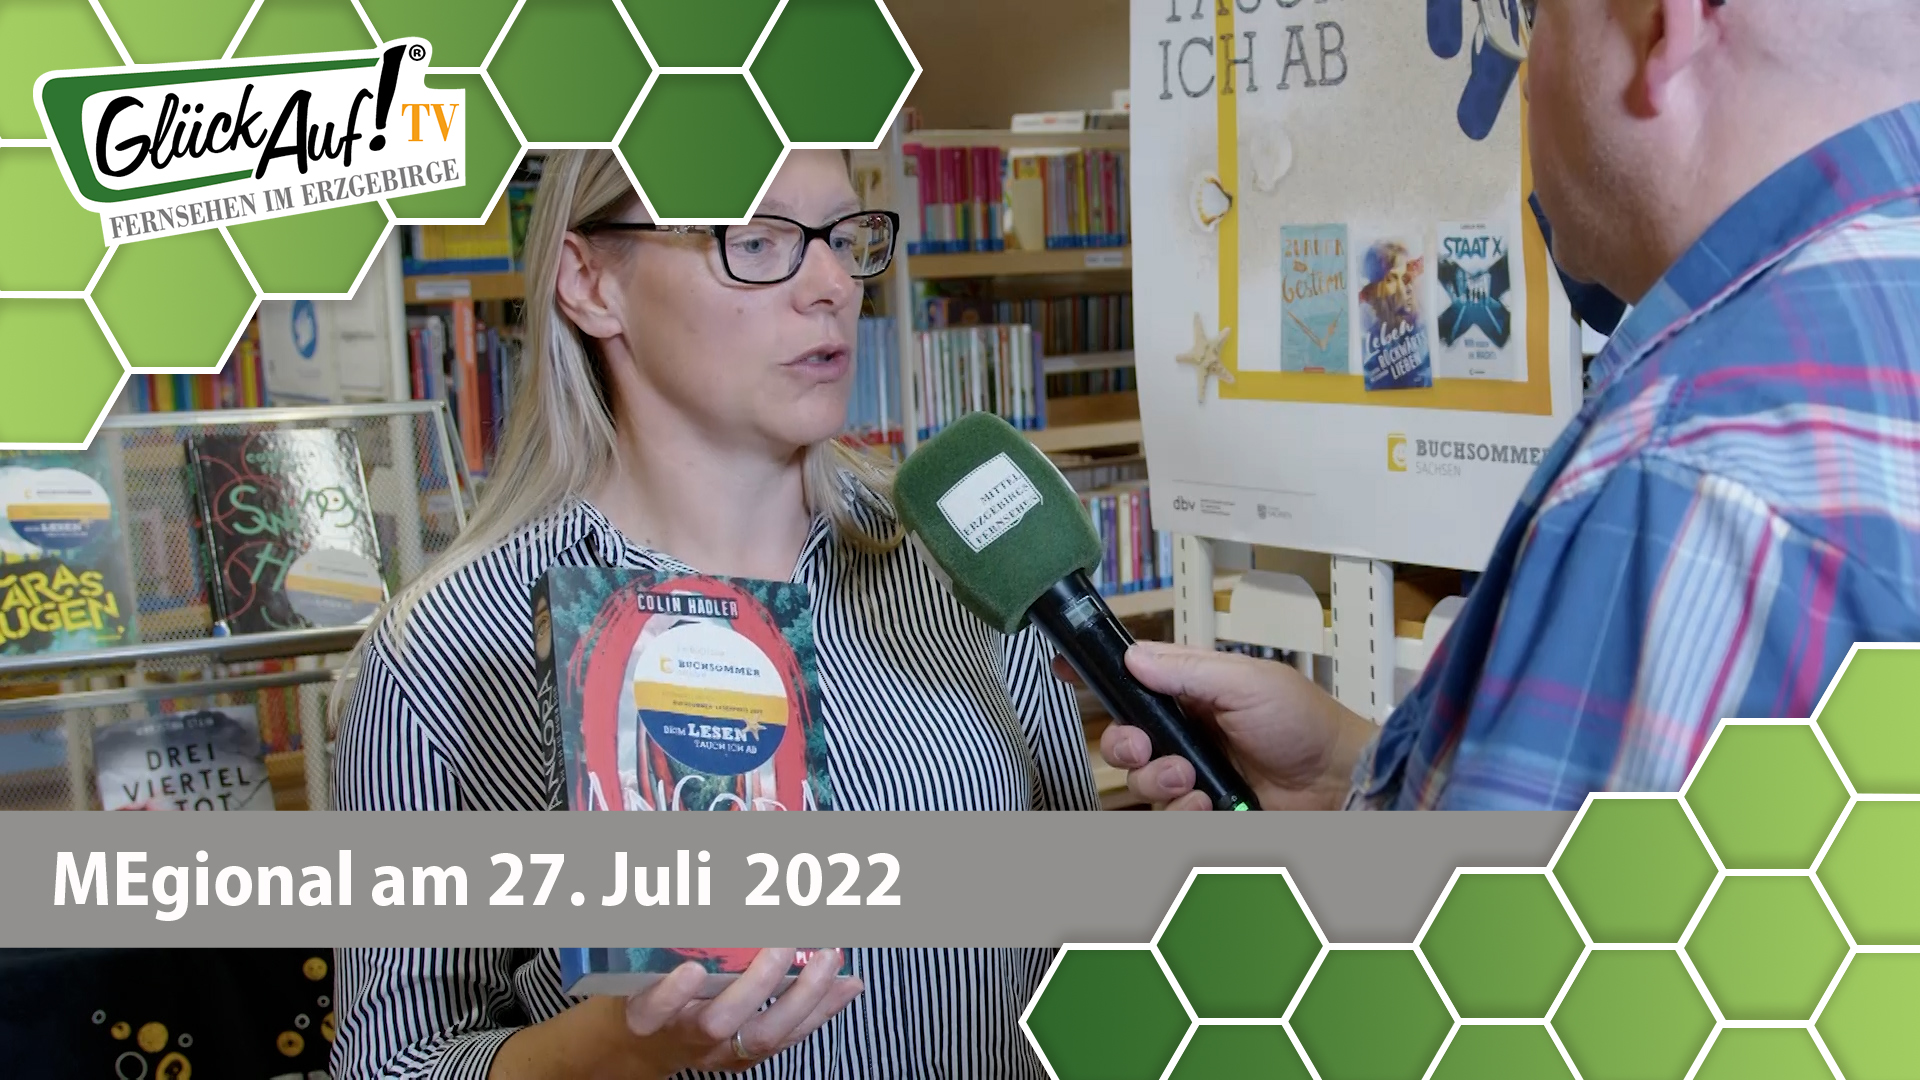 MEgional am 27. Juli 2022 - mit dem Buchsommer in der Bibliothek Marienberg